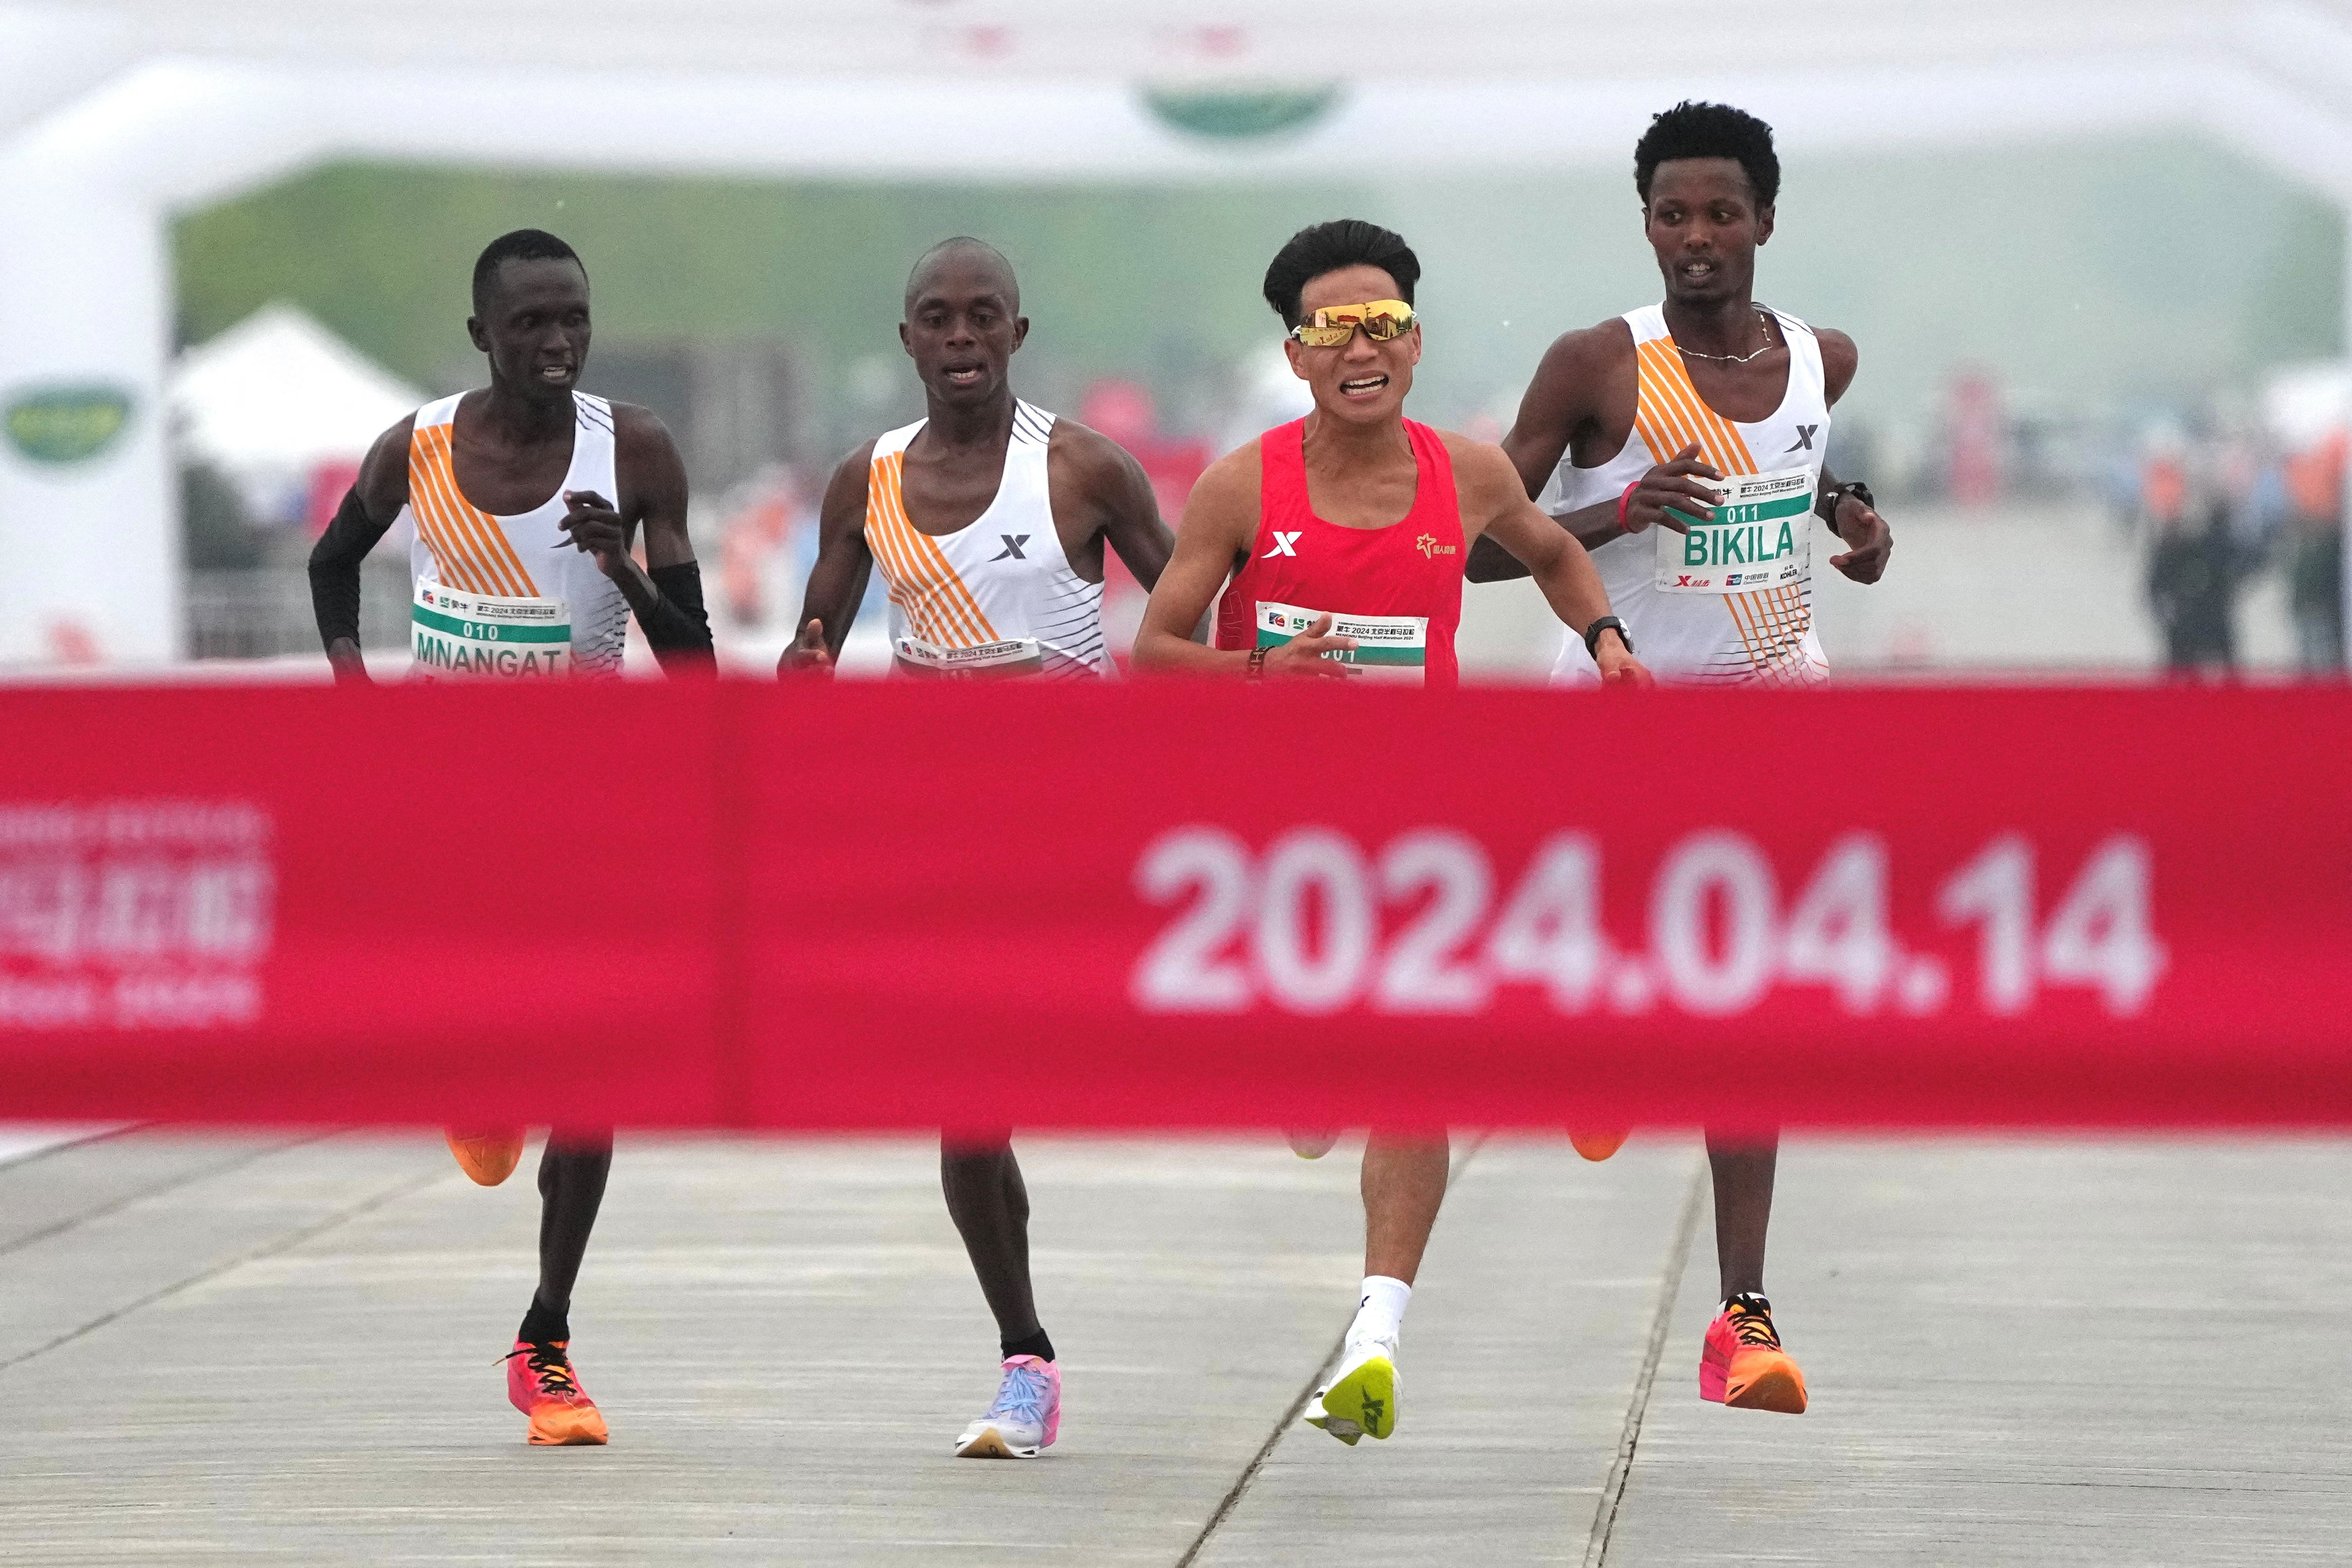 He Jie won the half marathon in Beijing